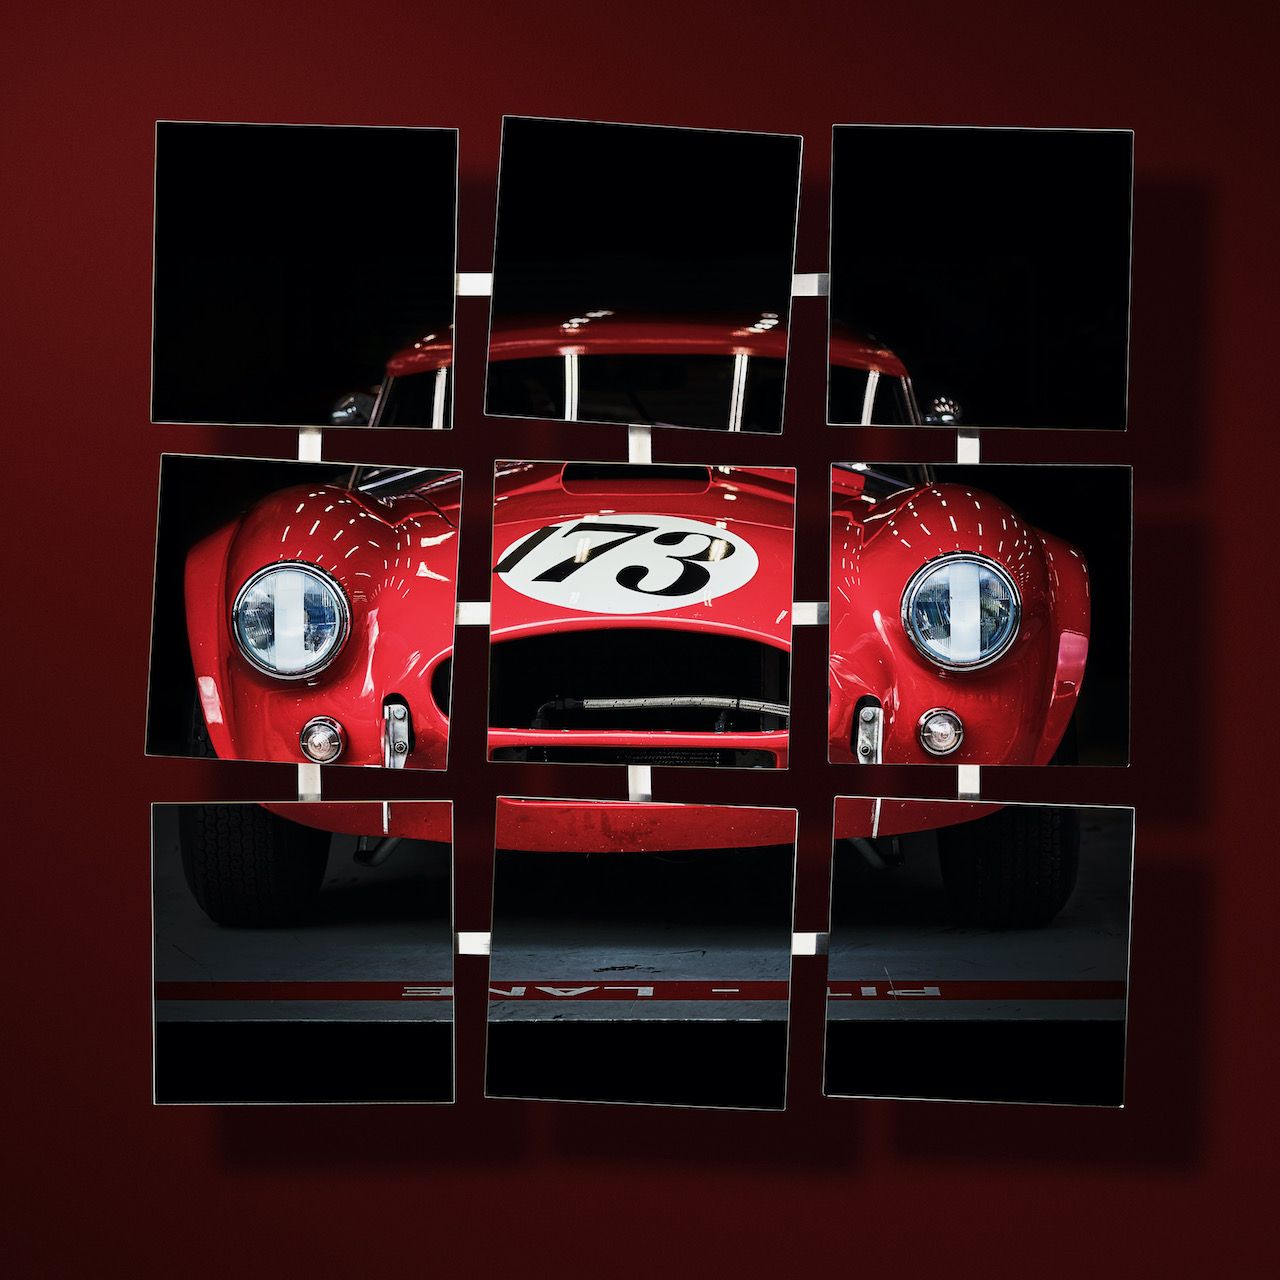 Michael Haegele Photographie neuf miroirs disposés en carré avec une voiture de sport rouge sur fond rouge foncé